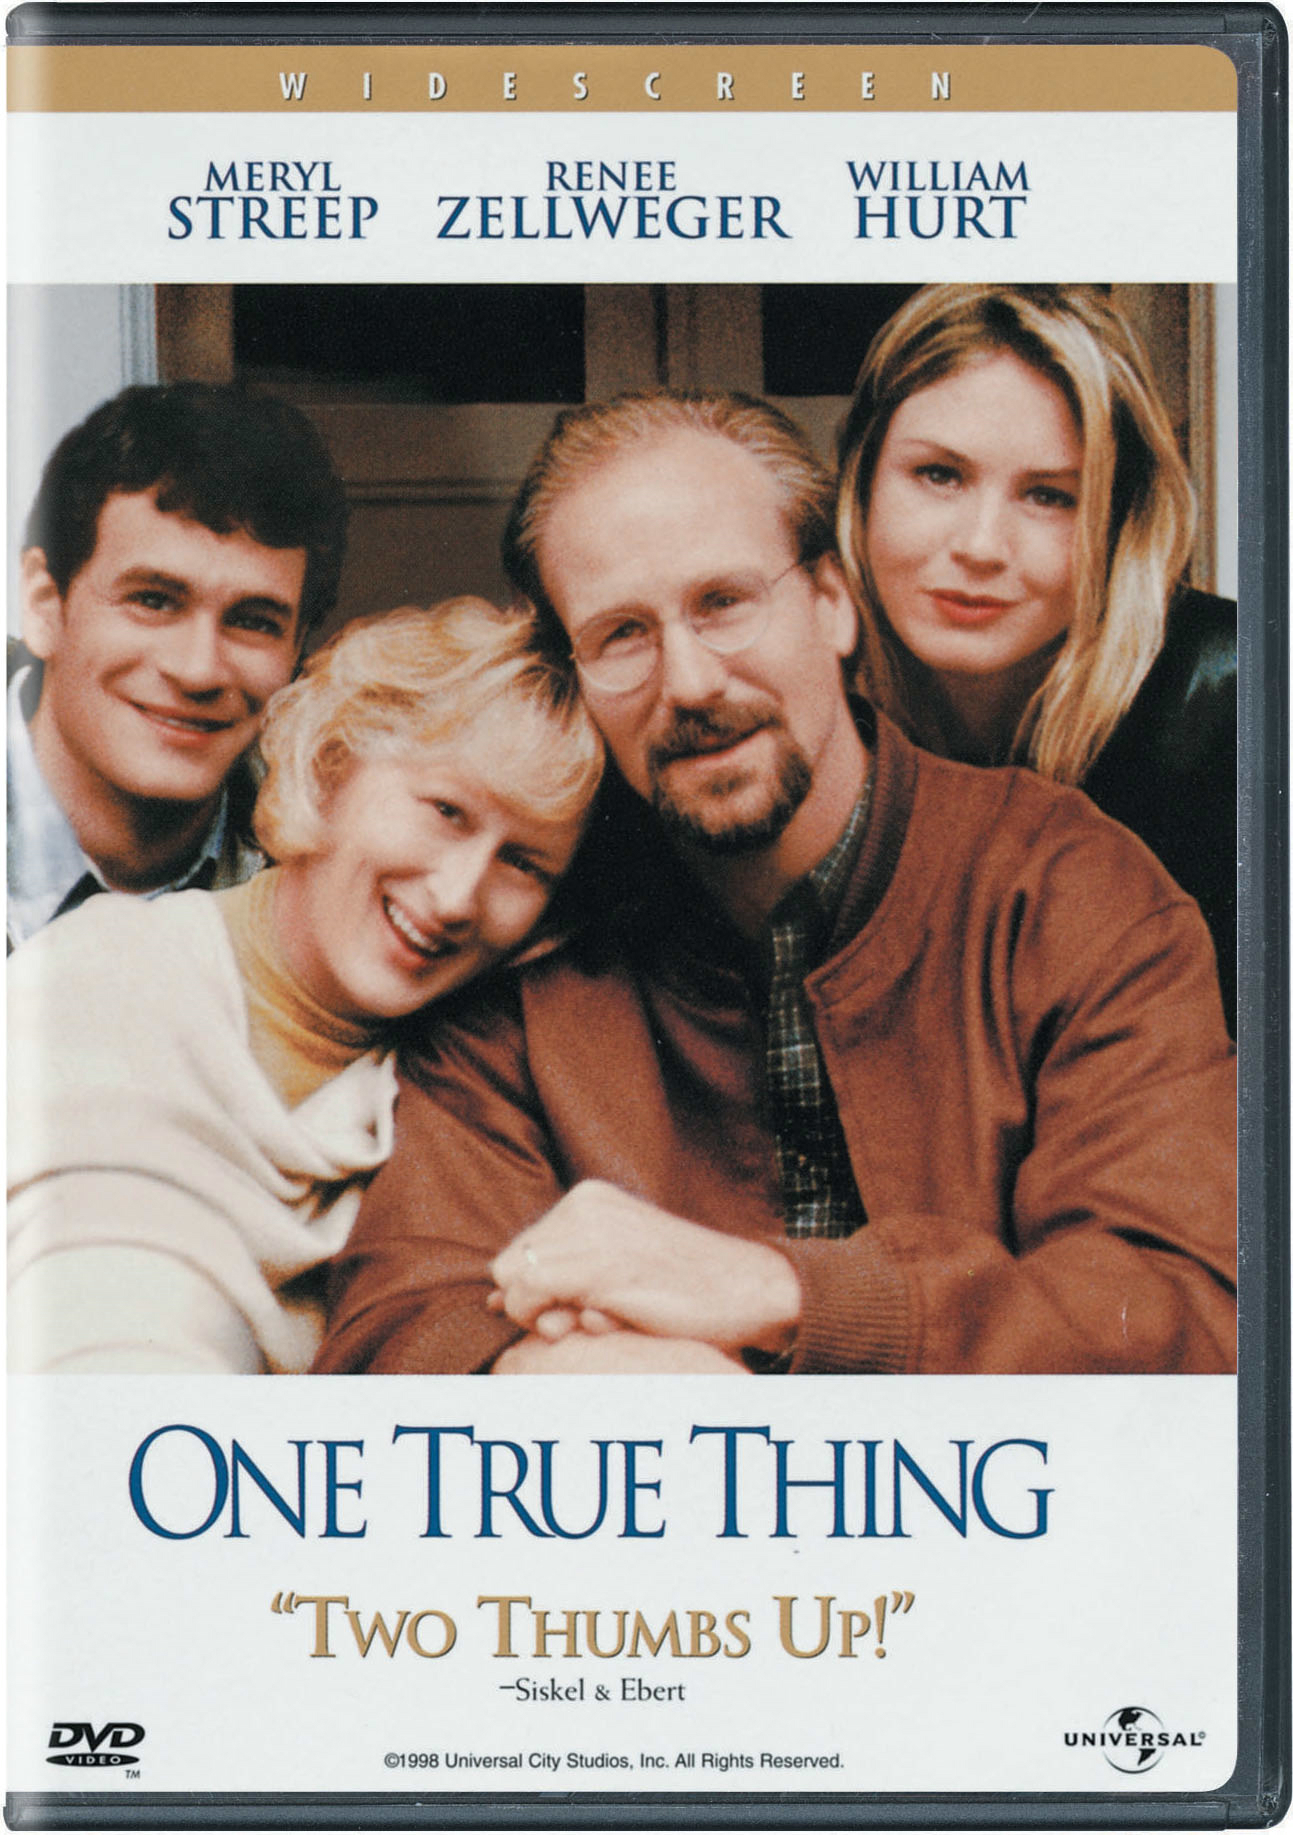 One True Thing - DVD [ 1998 ]  - Drama Movies On DVD - Movies On GRUV